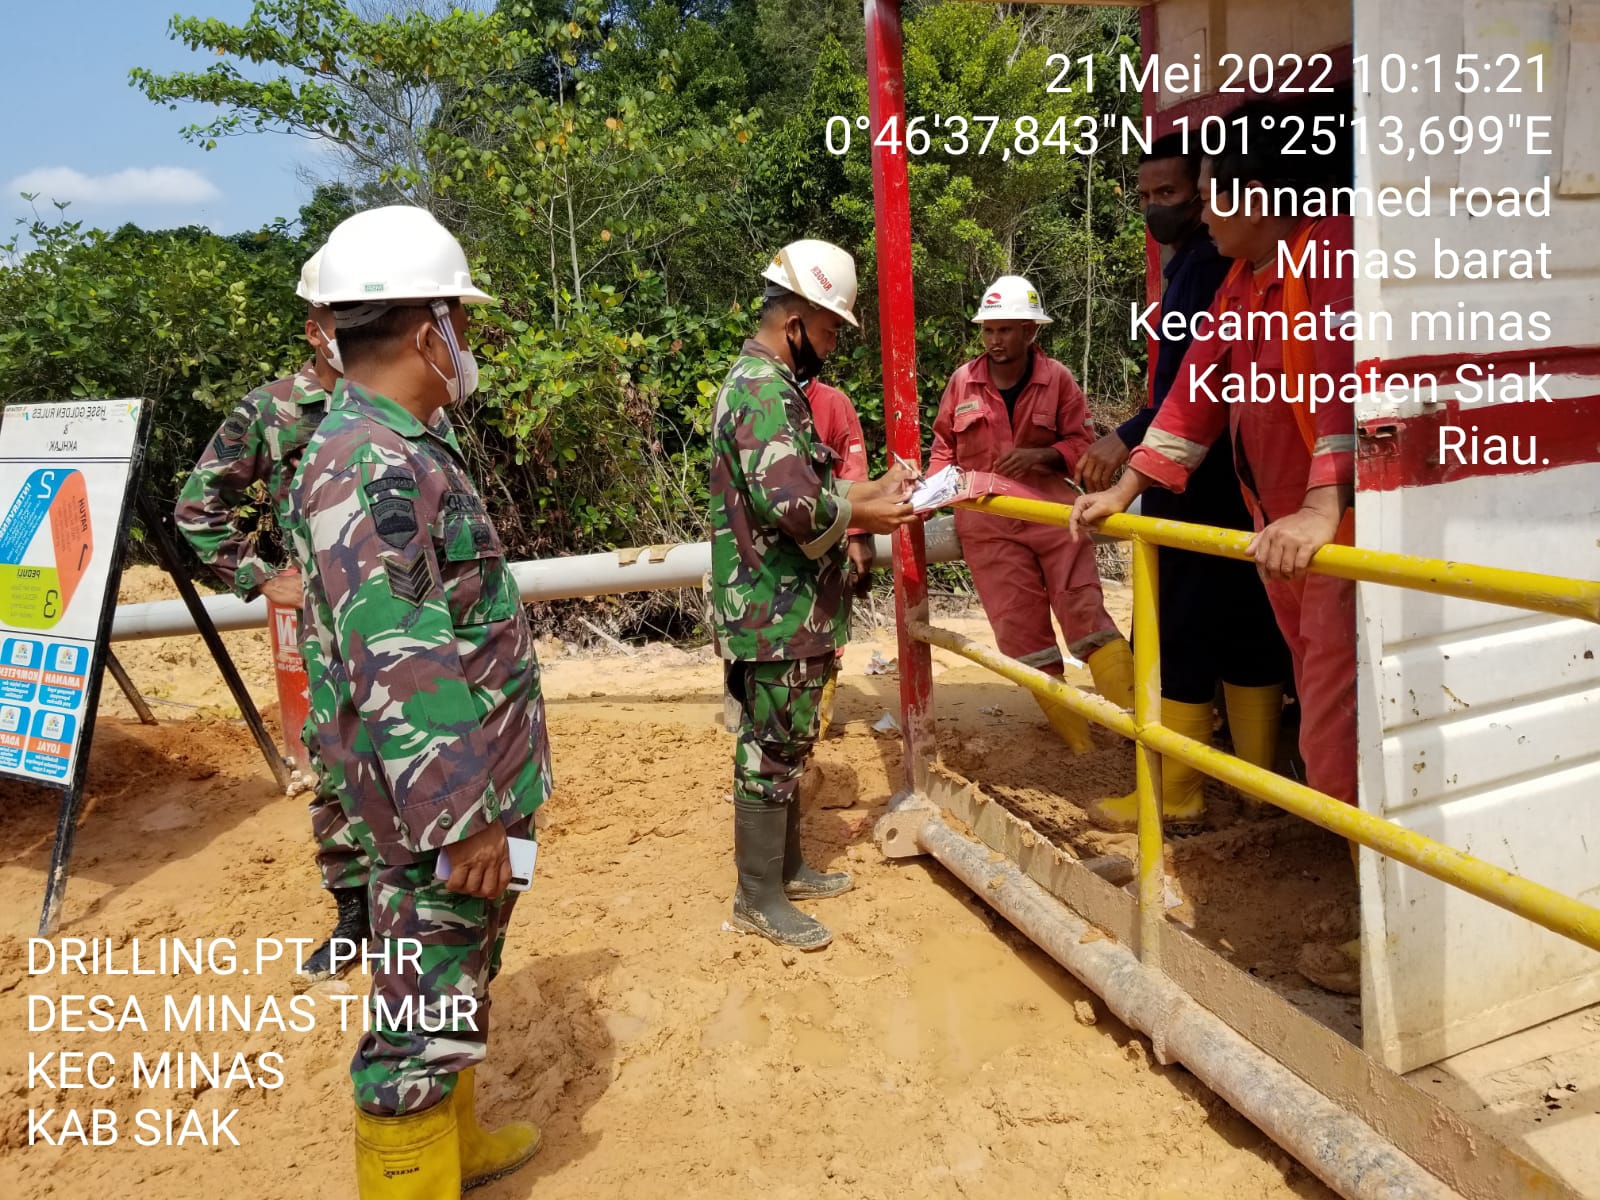 Sertu Susiawan & Sertu Ardhi Syam Hari Ini  Lakukan Patroli Drilling di Wilayah PT PHR Minas